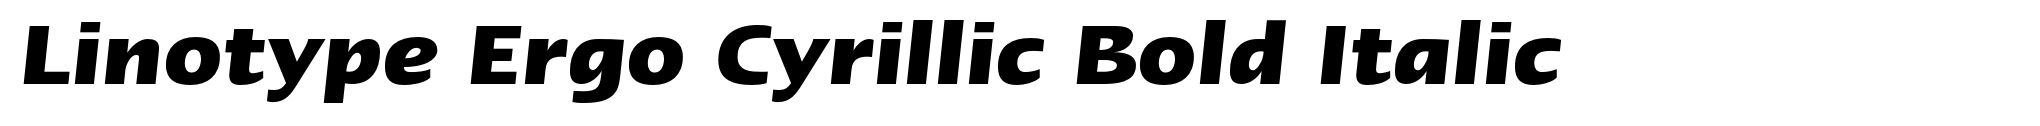 Linotype Ergo Cyrillic Bold Italic image